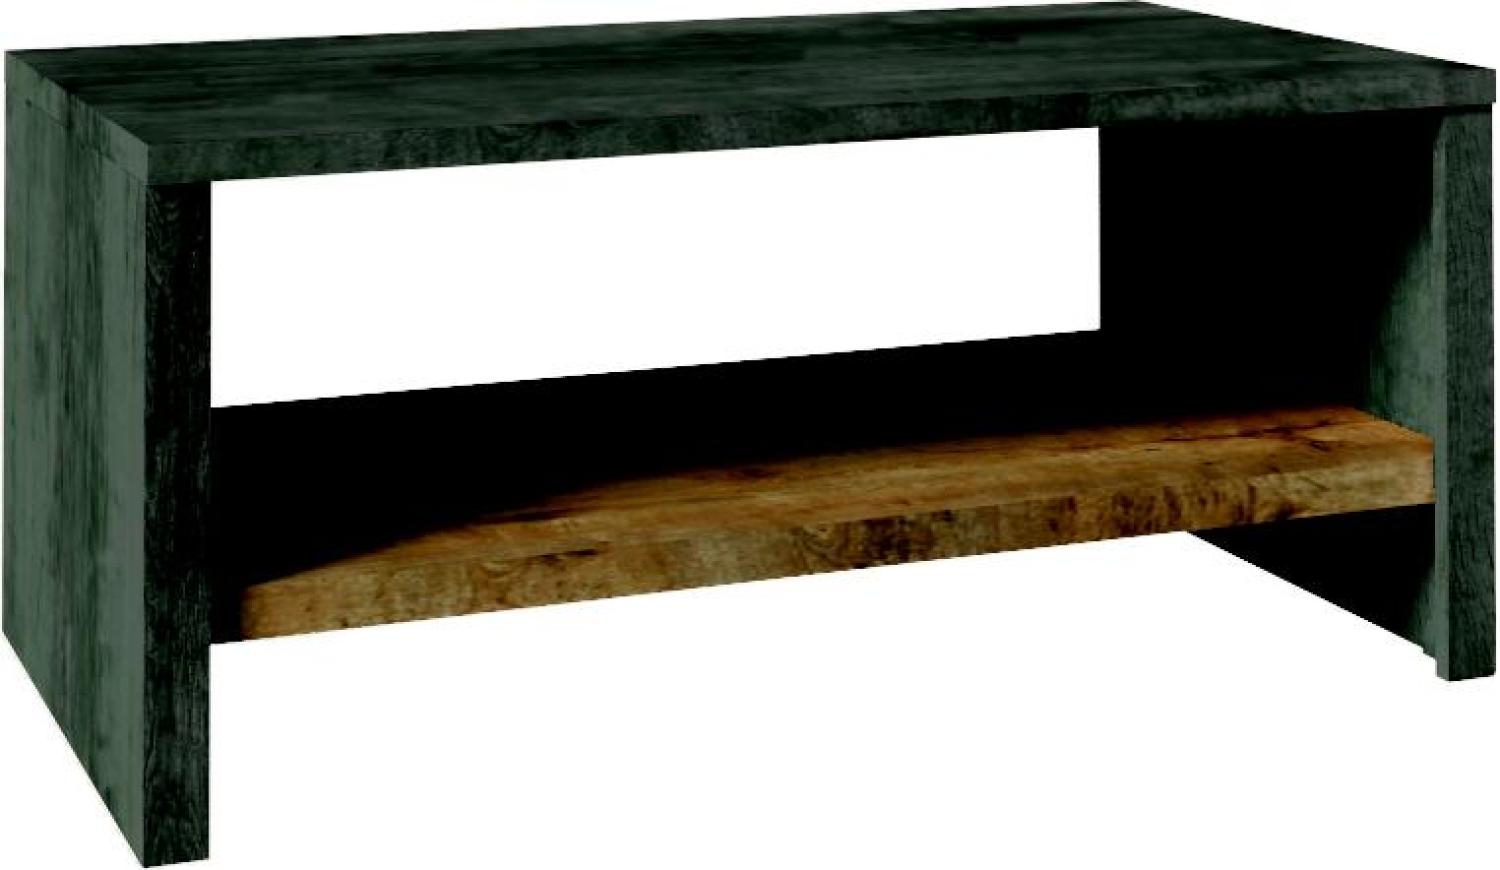 Couchtisch Holztisch Echtholz Massiv Holz Beistelltisch Tisch 120x60 Couchtische Bild 1